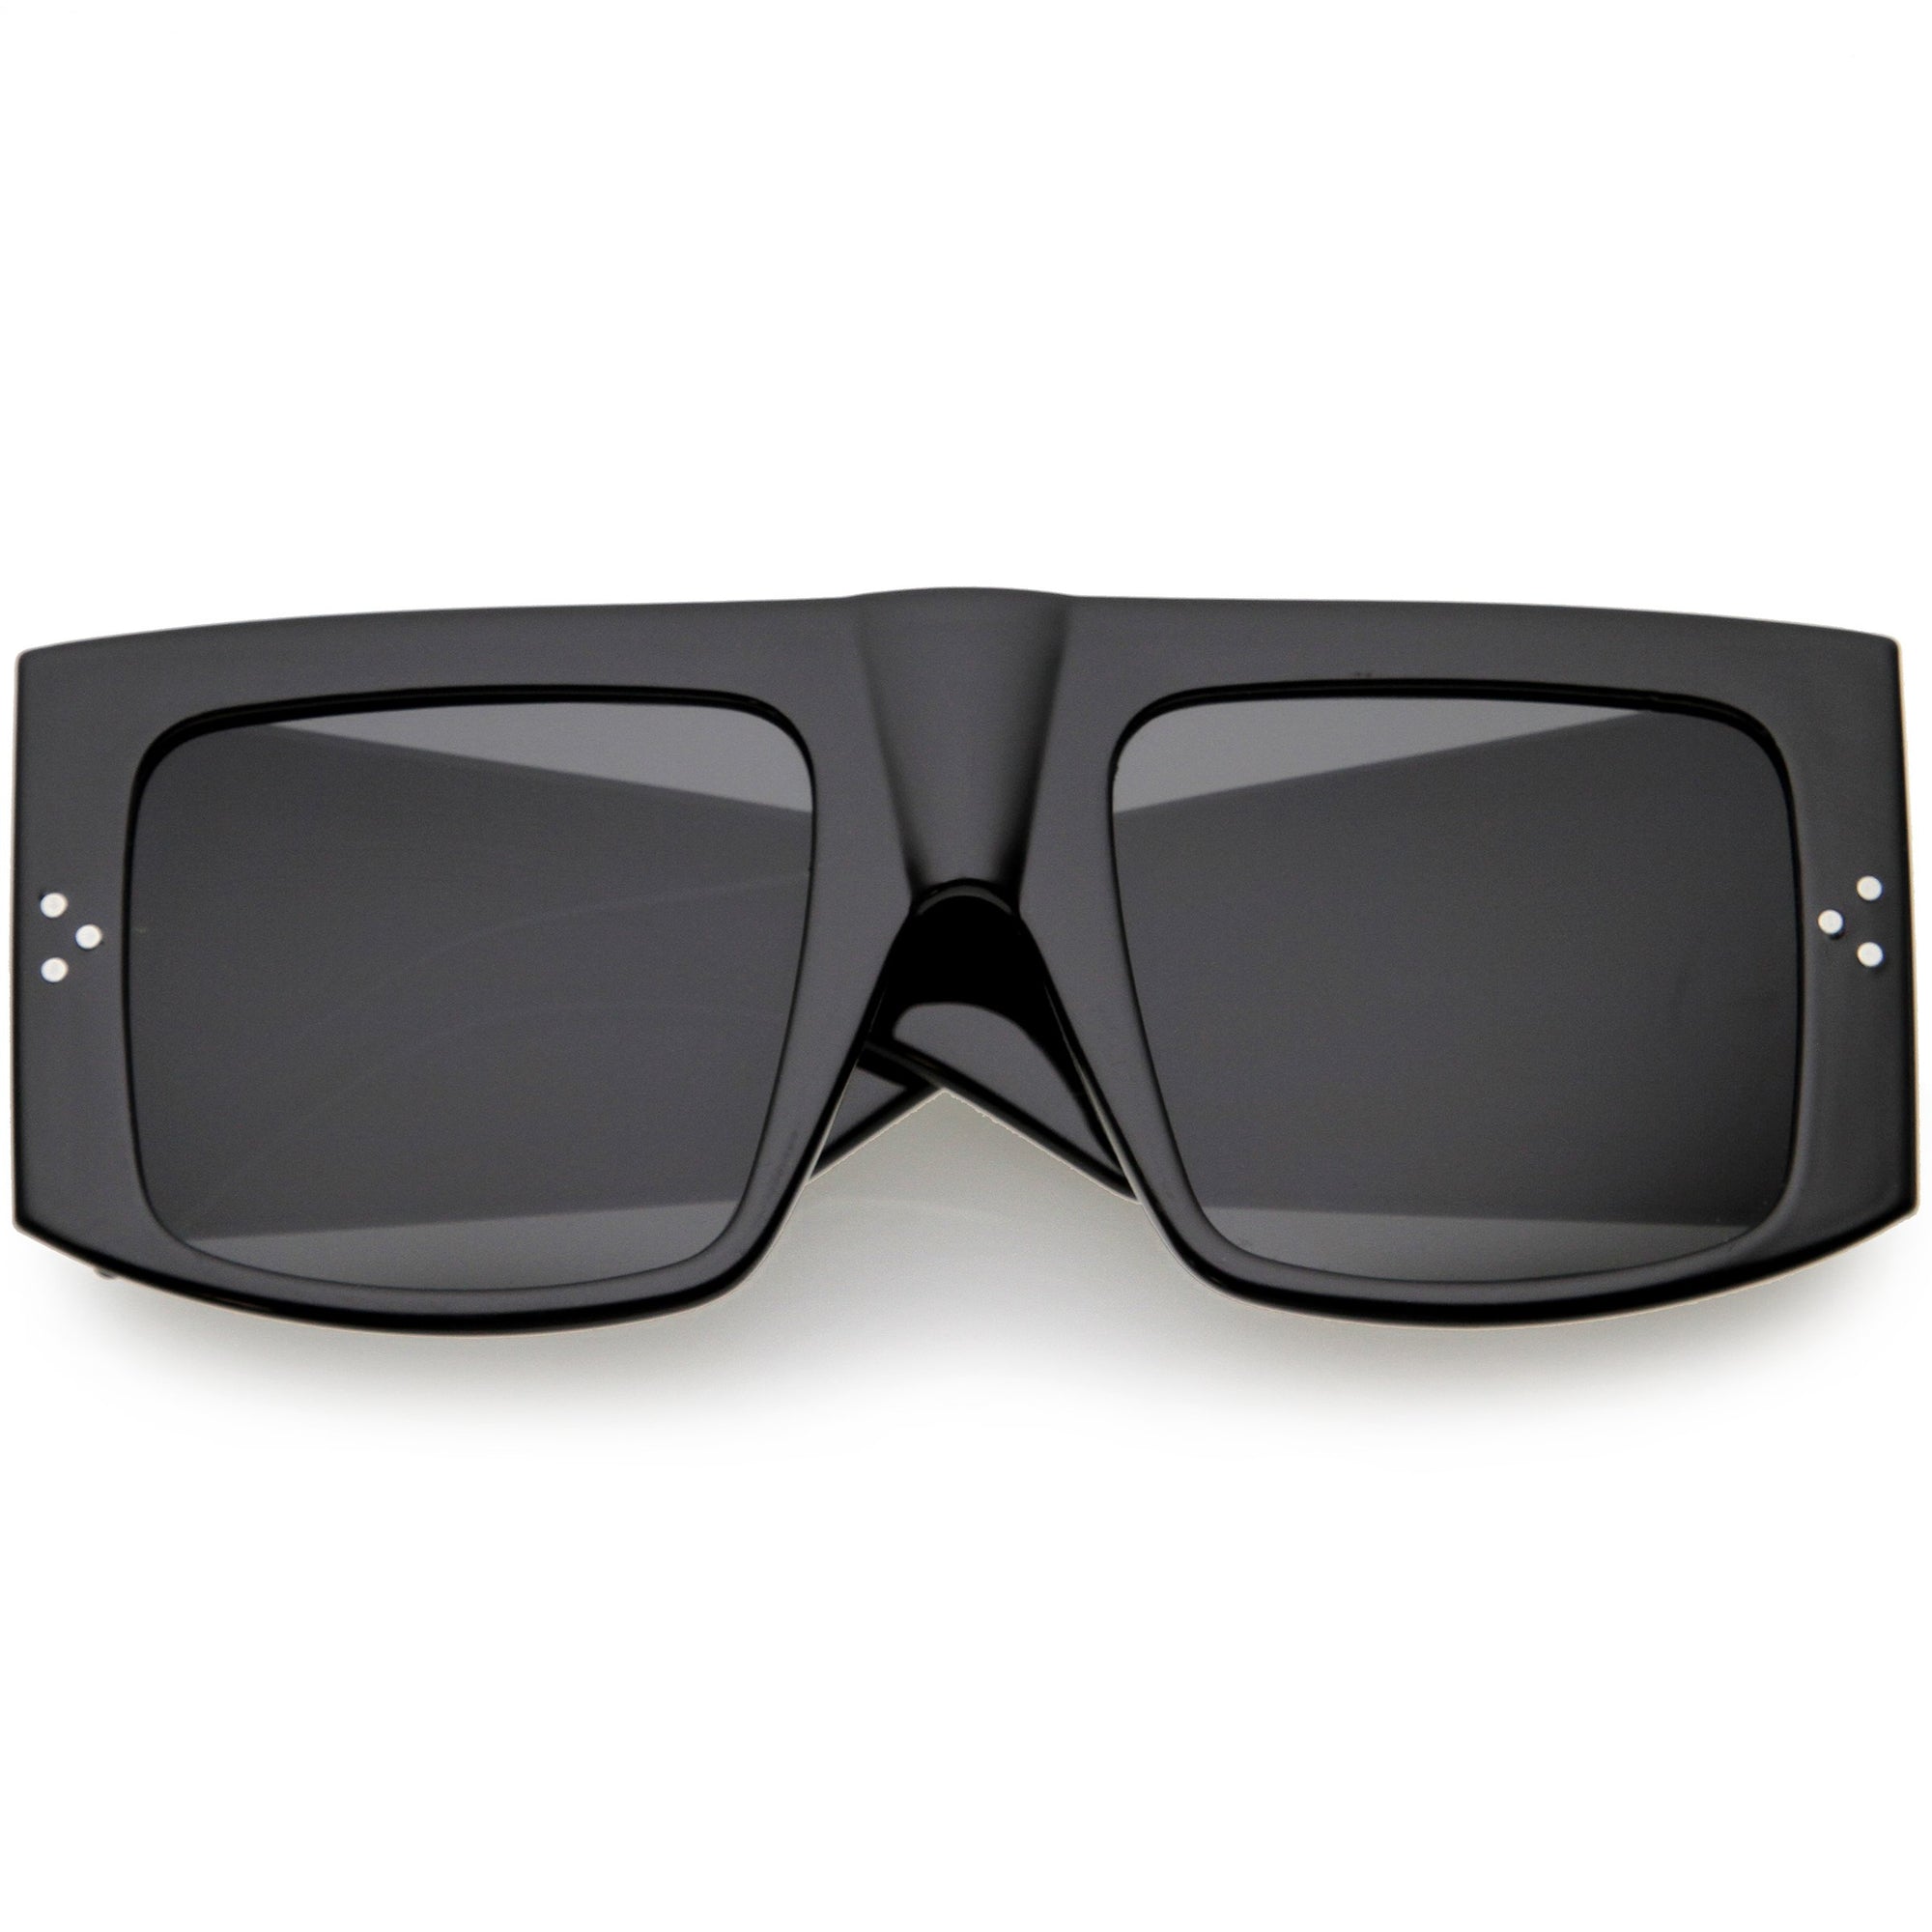 Unisex Flat Top Square Sunglasses Black